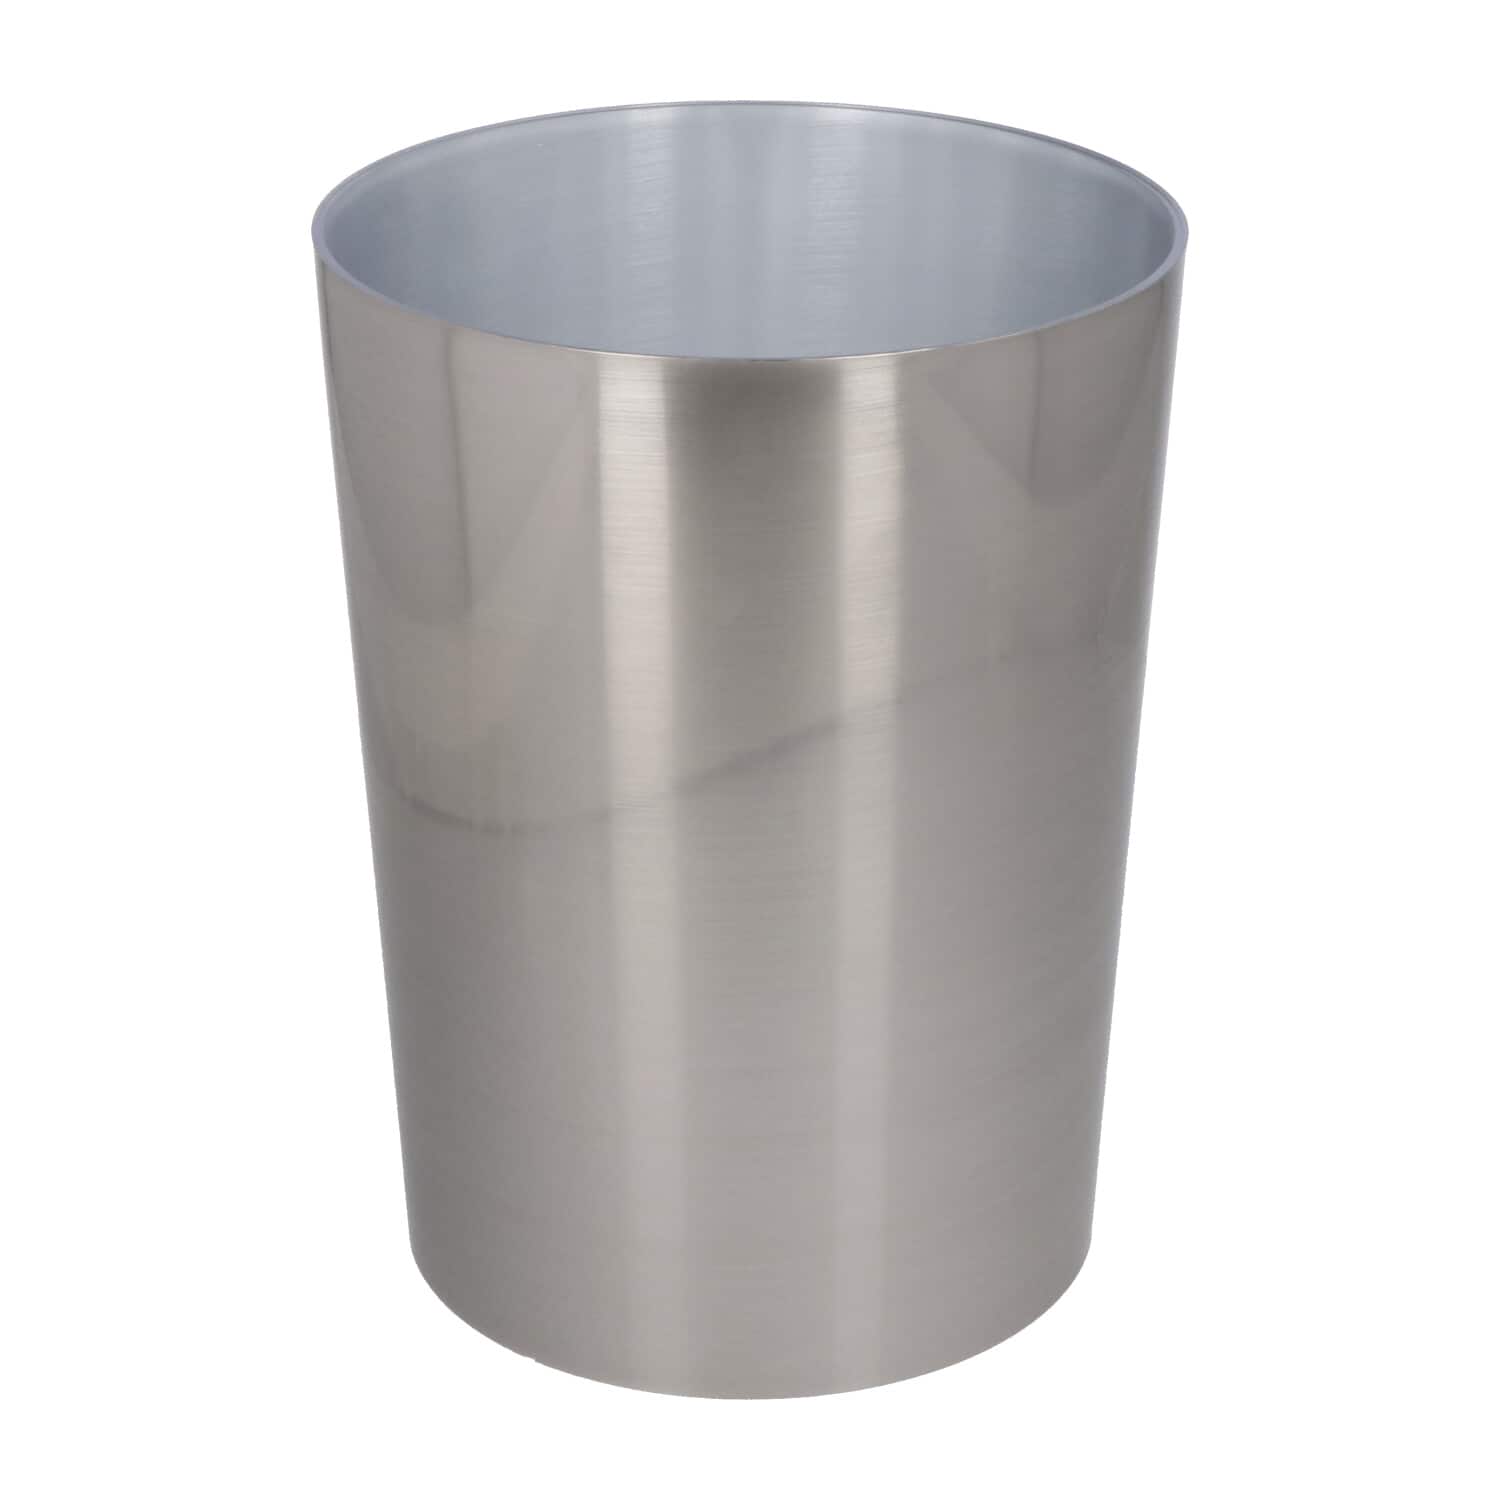 4goodz afvalbakje 6,5 liter rond - Metallook zilver